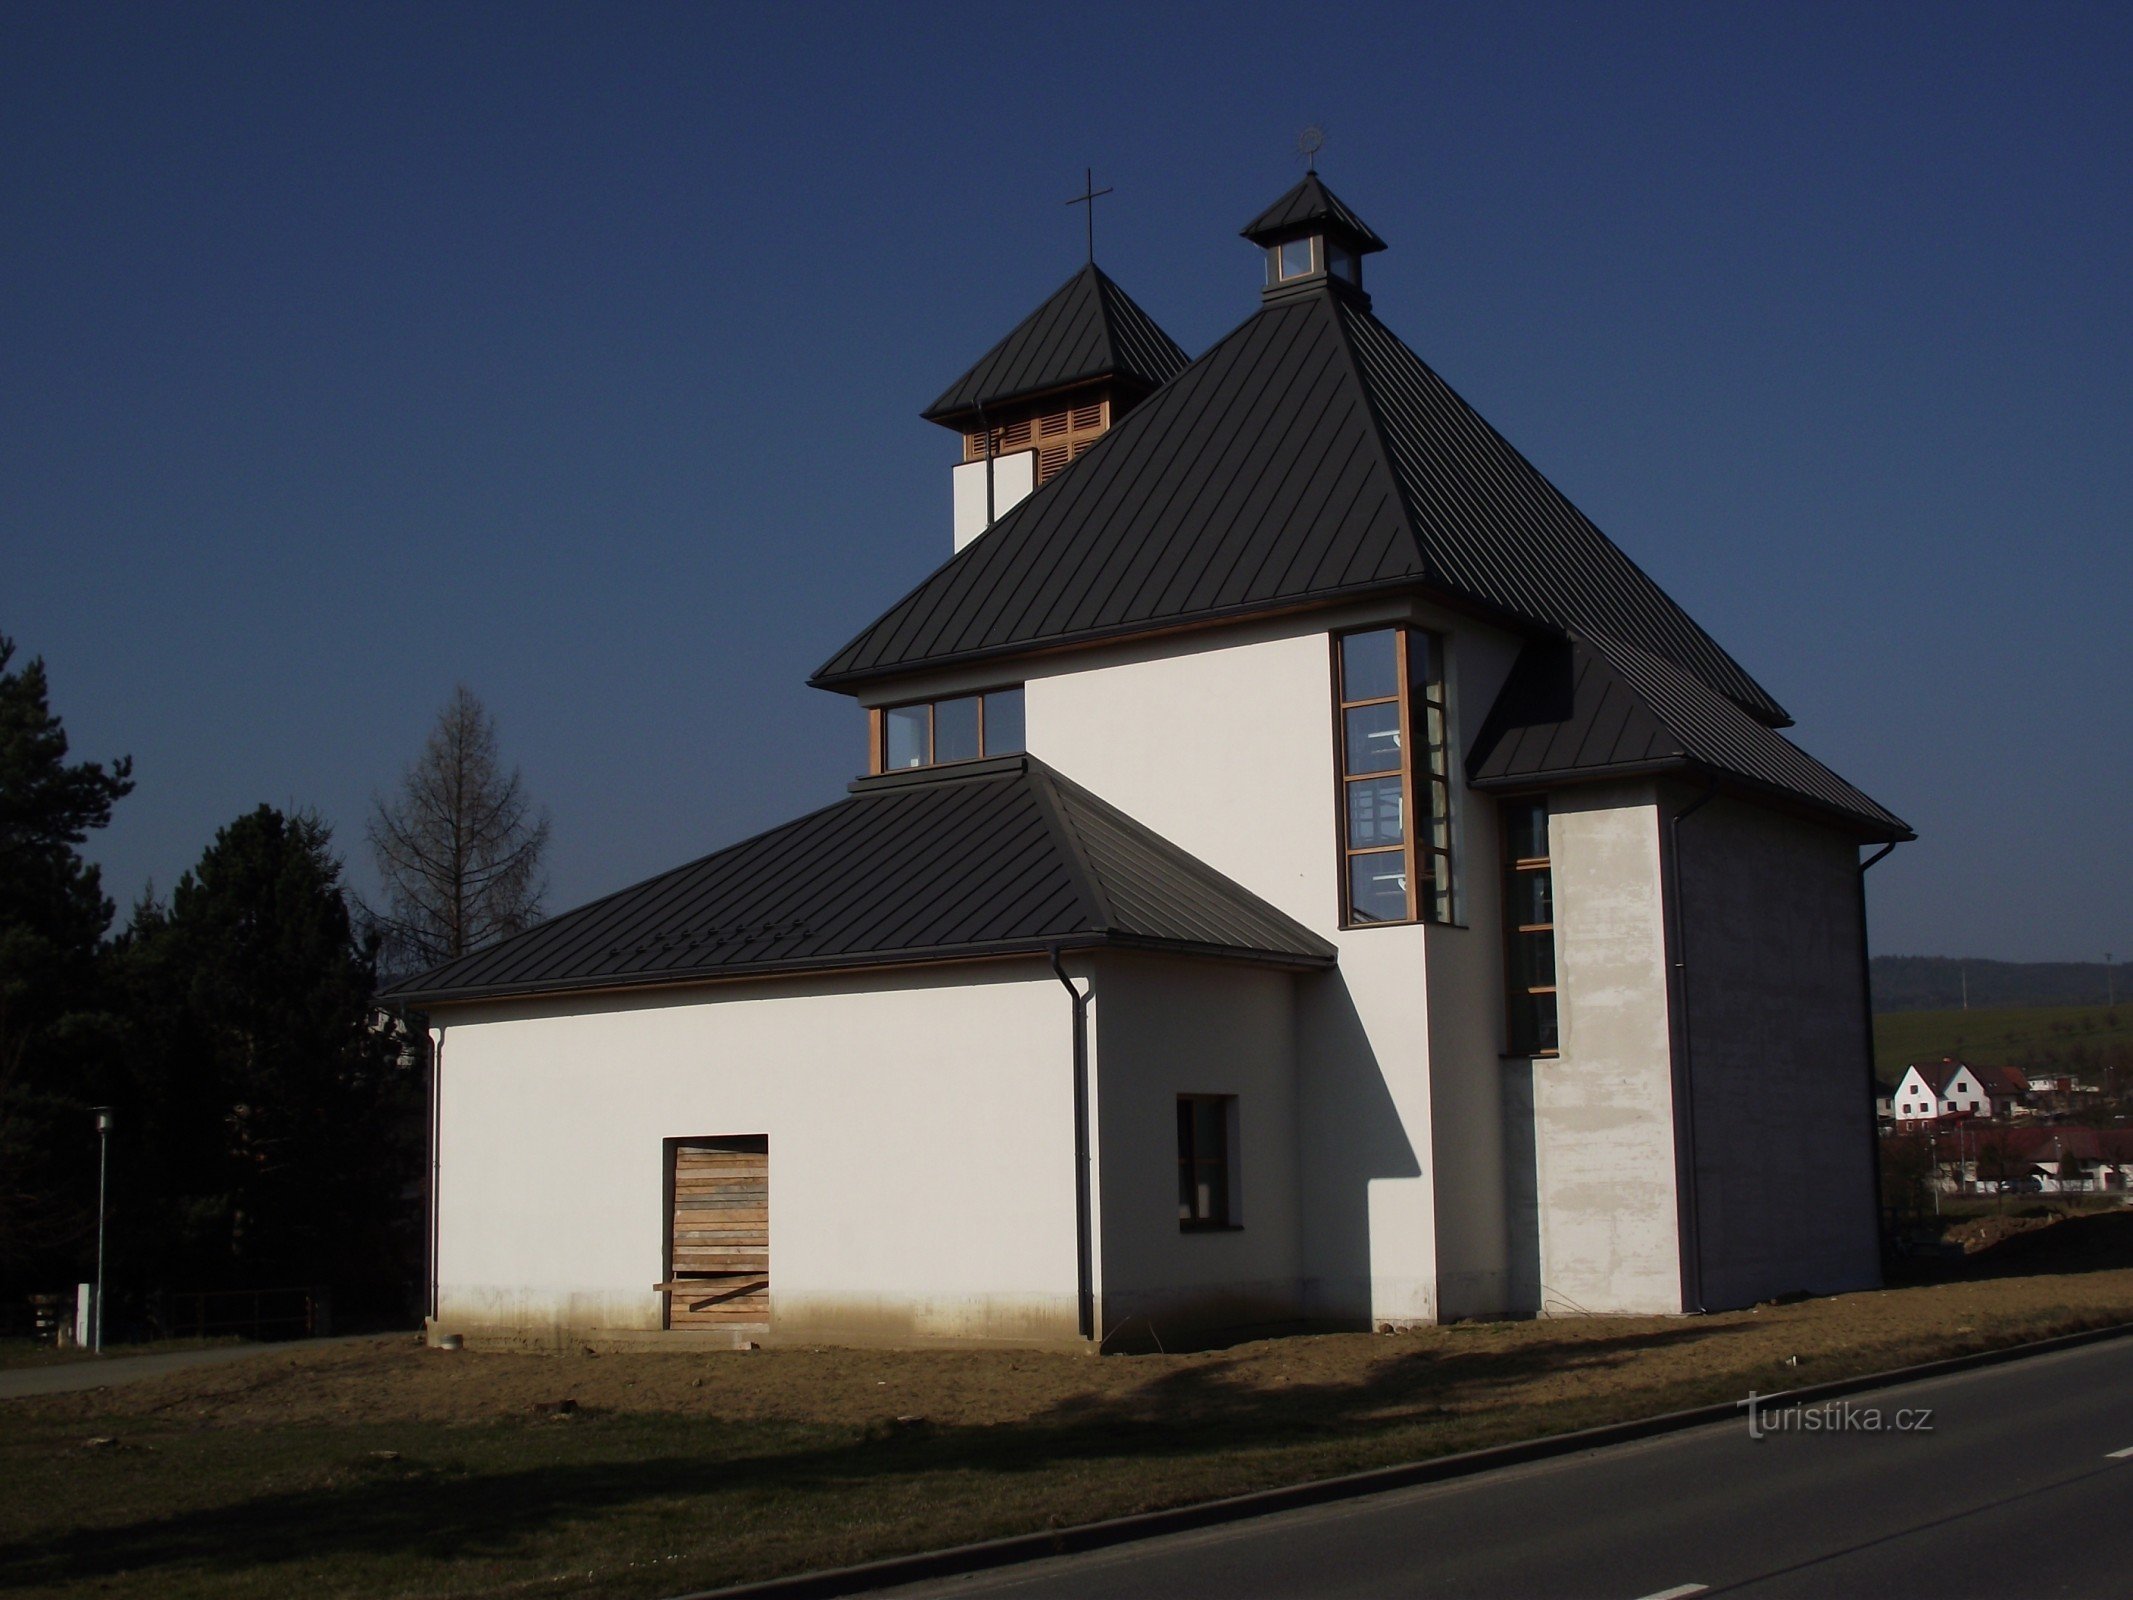 Dolní Lhota bei Luhačovice - die Kirche der Muttergottes vom Karmel